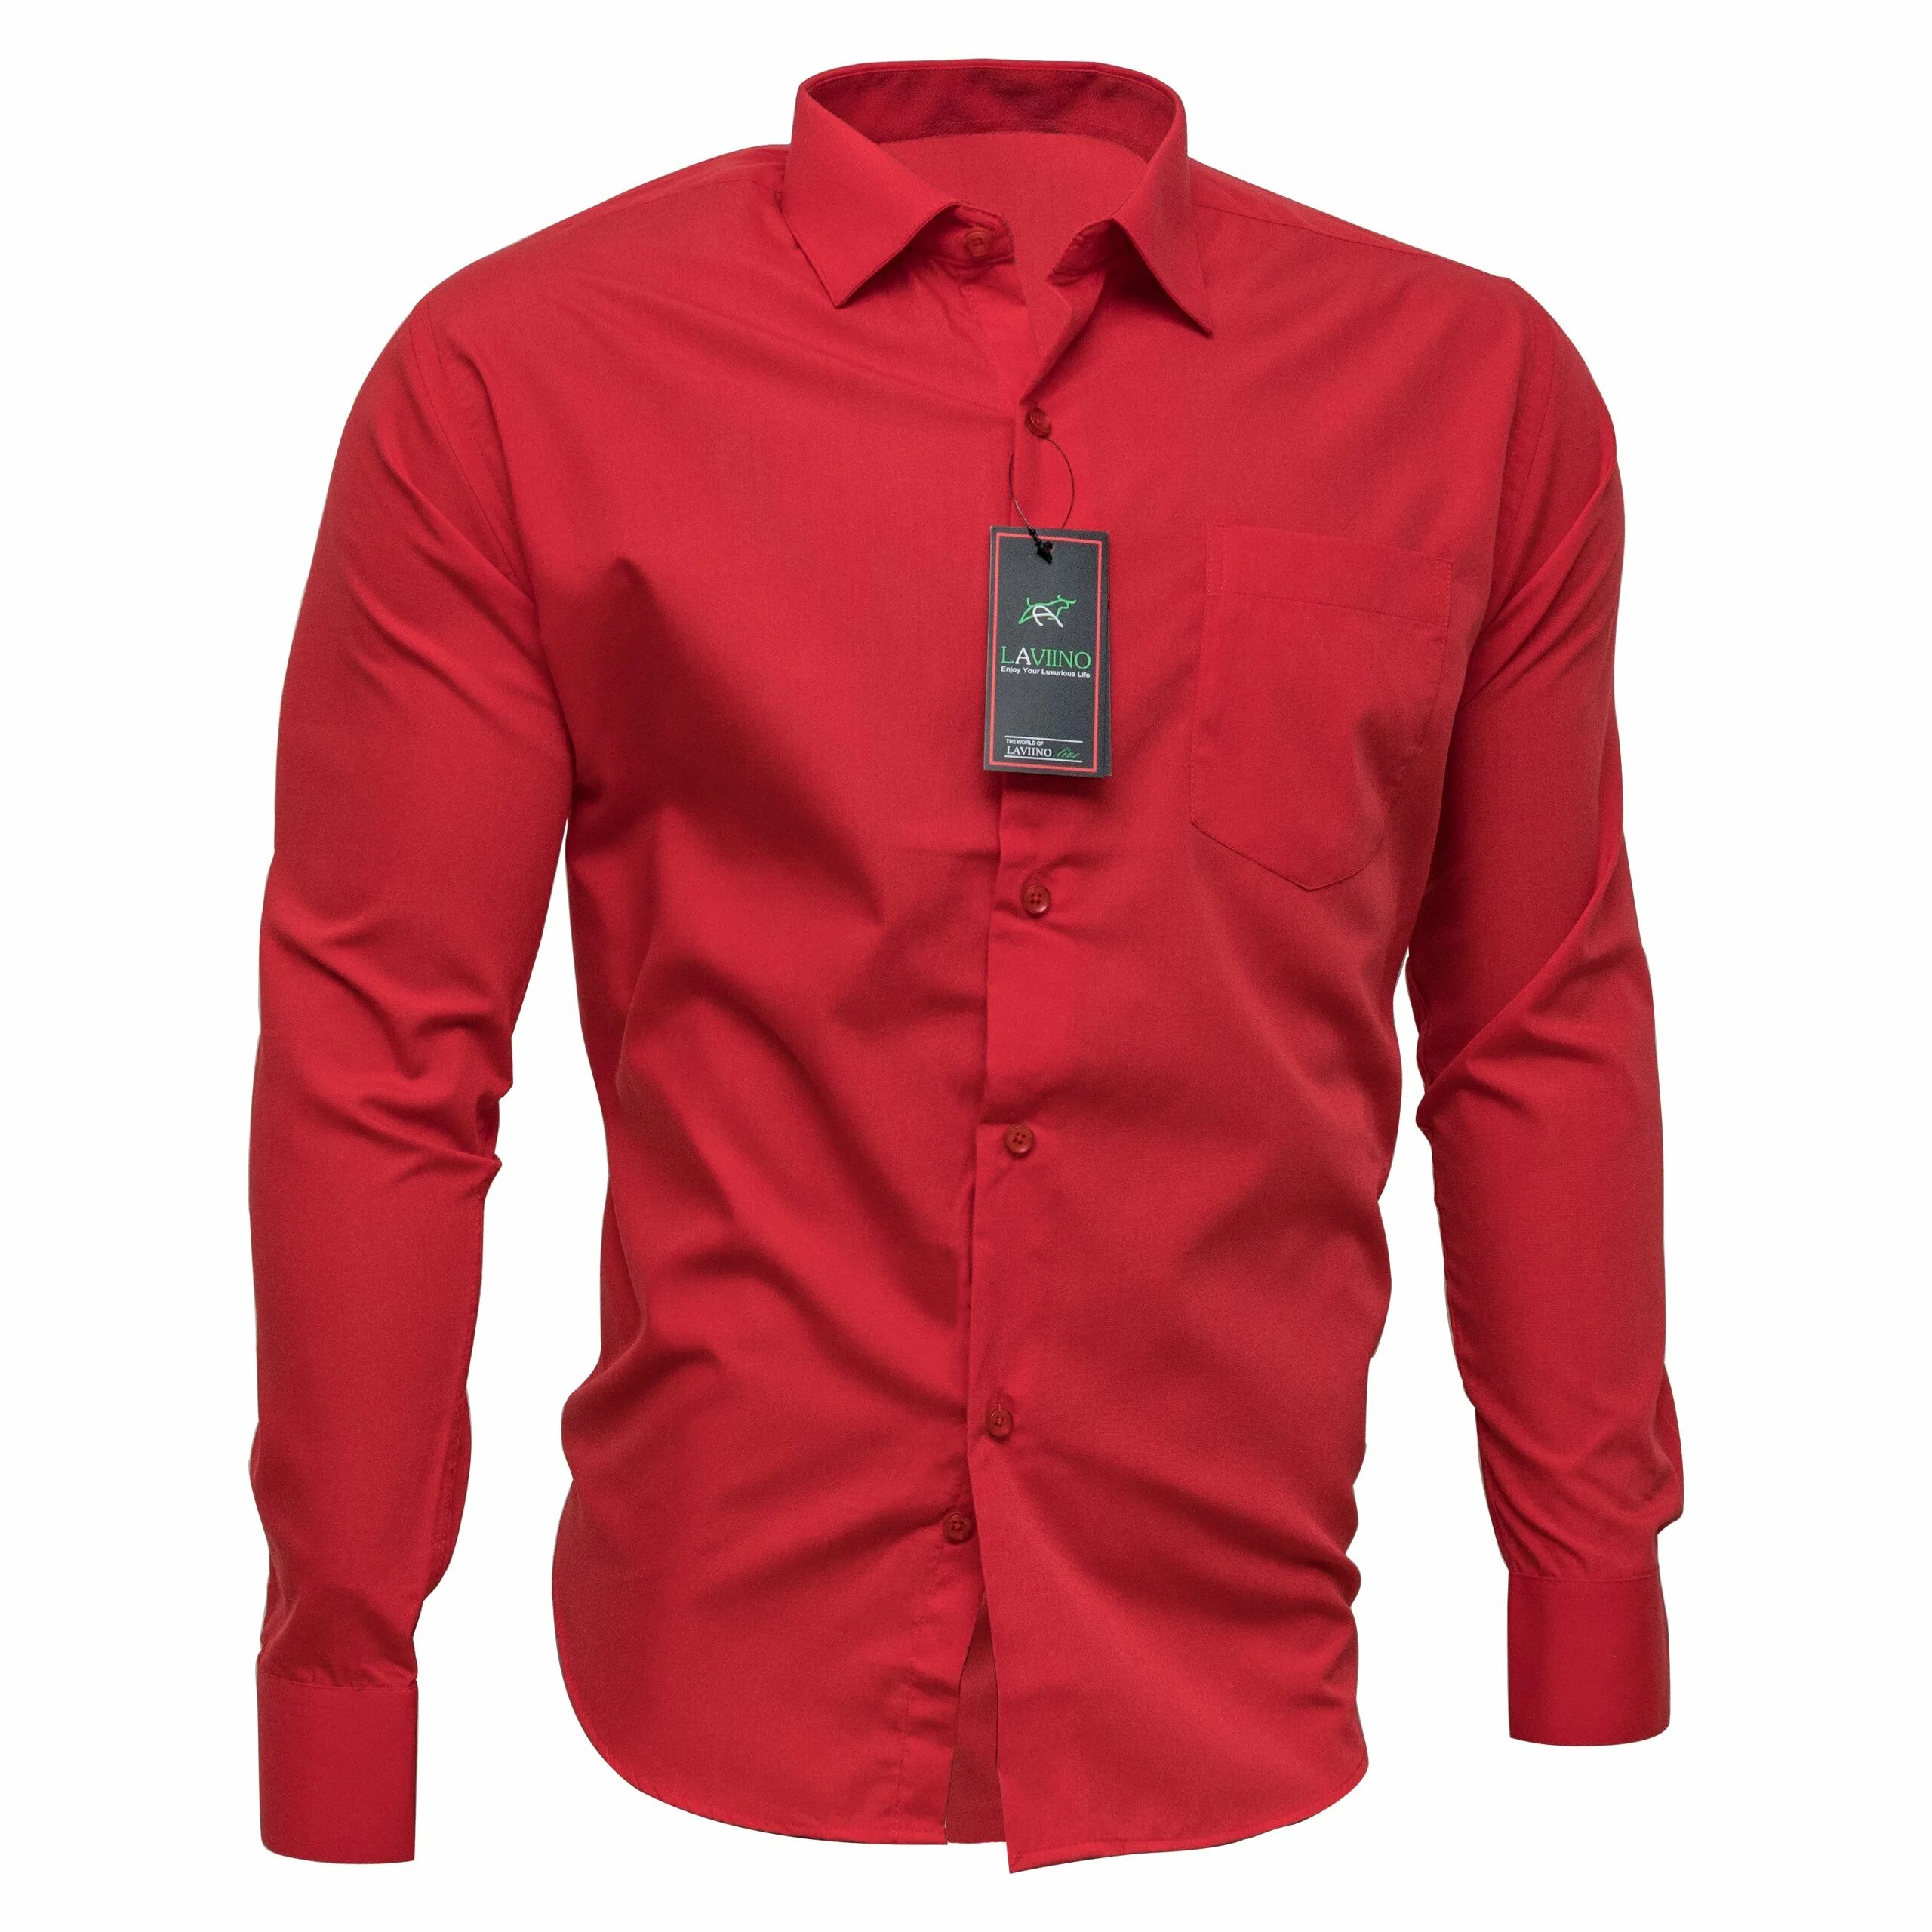 Рубашка мужская MCR красная. Рубашка мужская с длинным рукавом красная. Красная рубашка мужская классическая. Мужская рубашка красного цвета. Красная рубашка текст